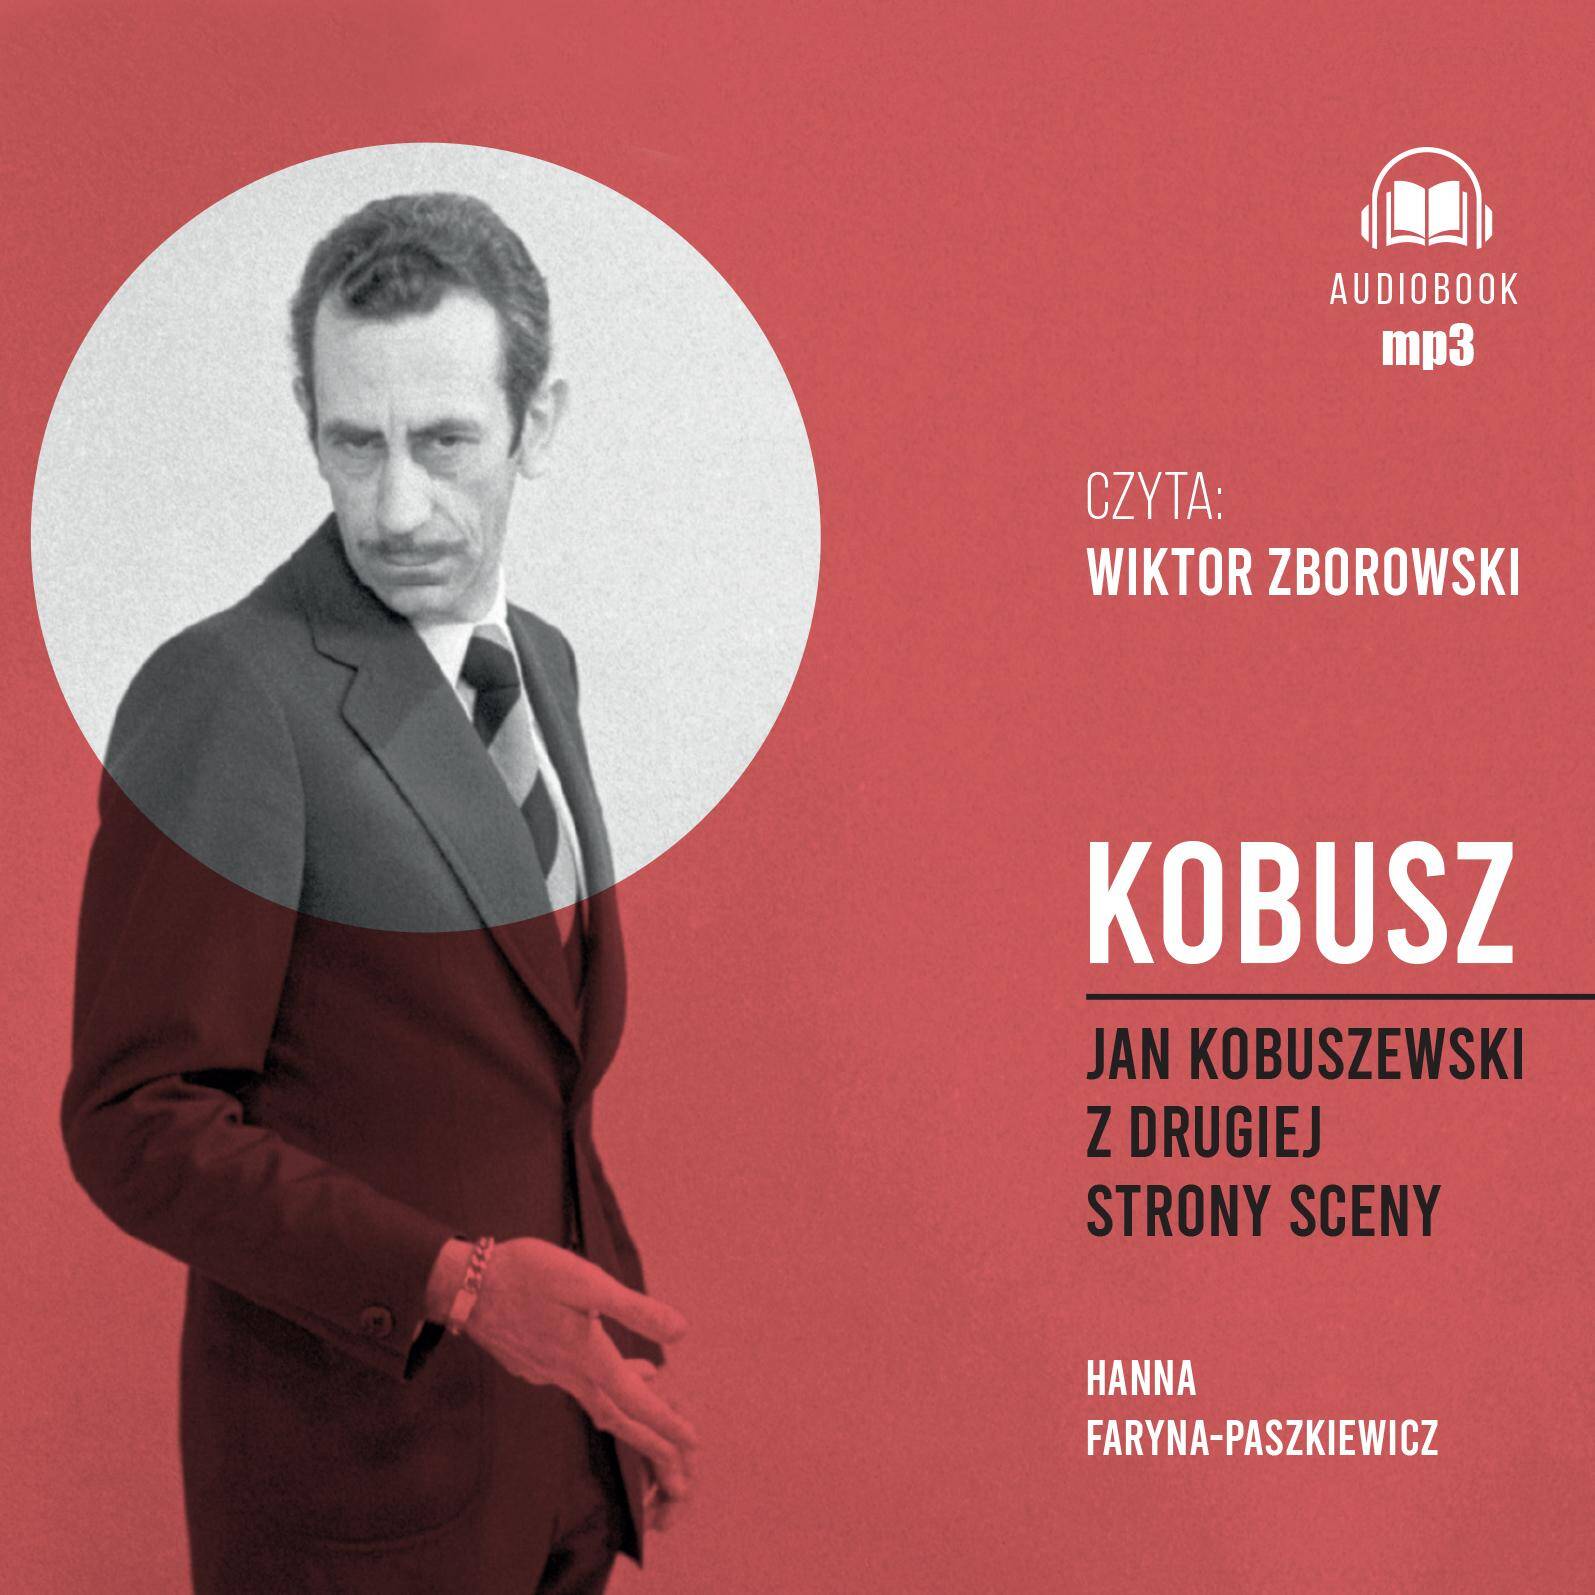 CD MP3 Kobusz. Jan Kobuszewski z drugiej strony sceny